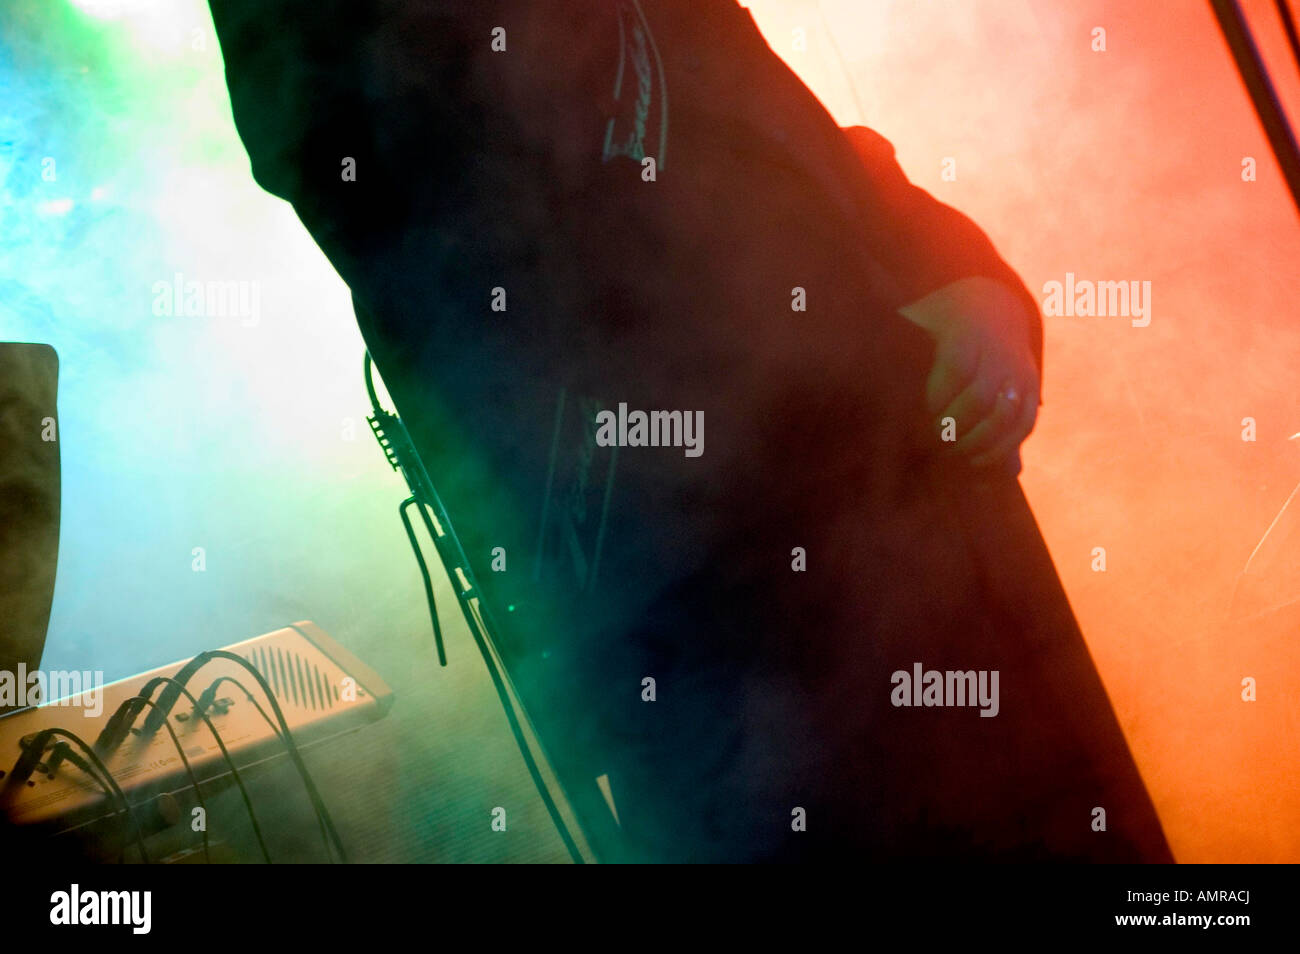 Il chitarrista esibirsi sul palco con fumo e colorata illuminazione posteriore Foto Stock